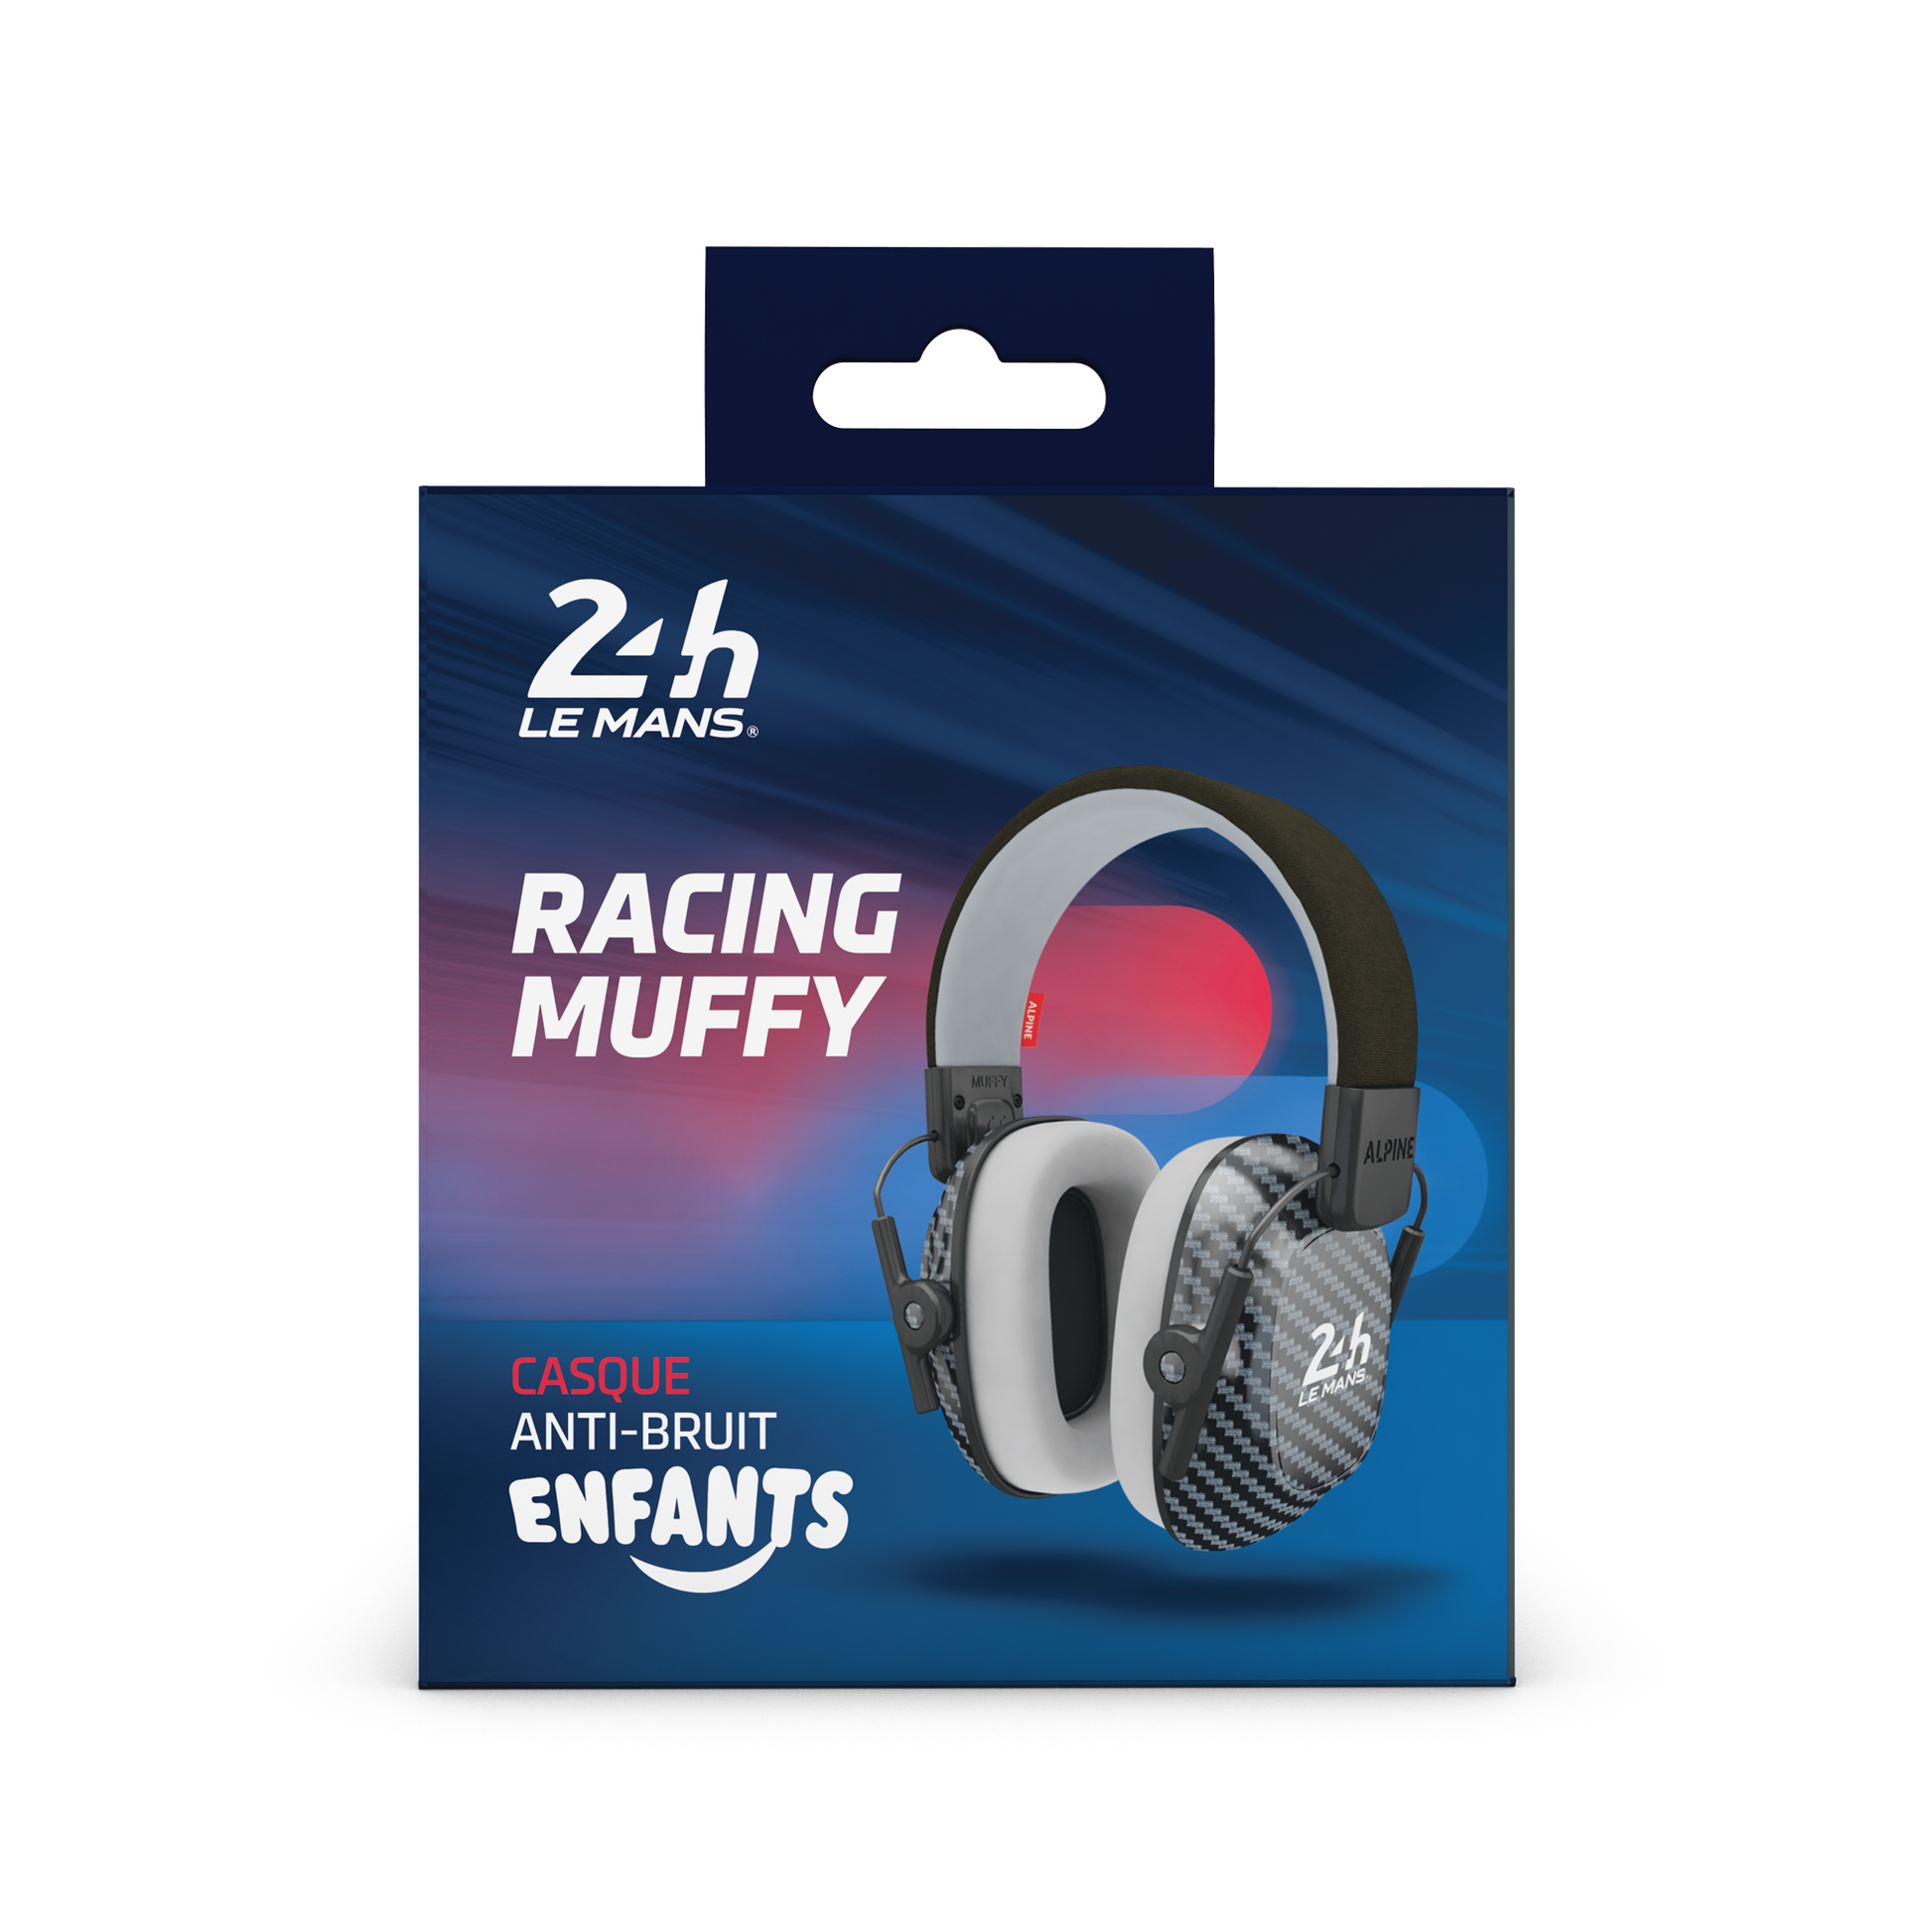 Casque anti-bruit pour enfants 24H Le Mans® Racing Muffy – Alpine  Protection Auditive